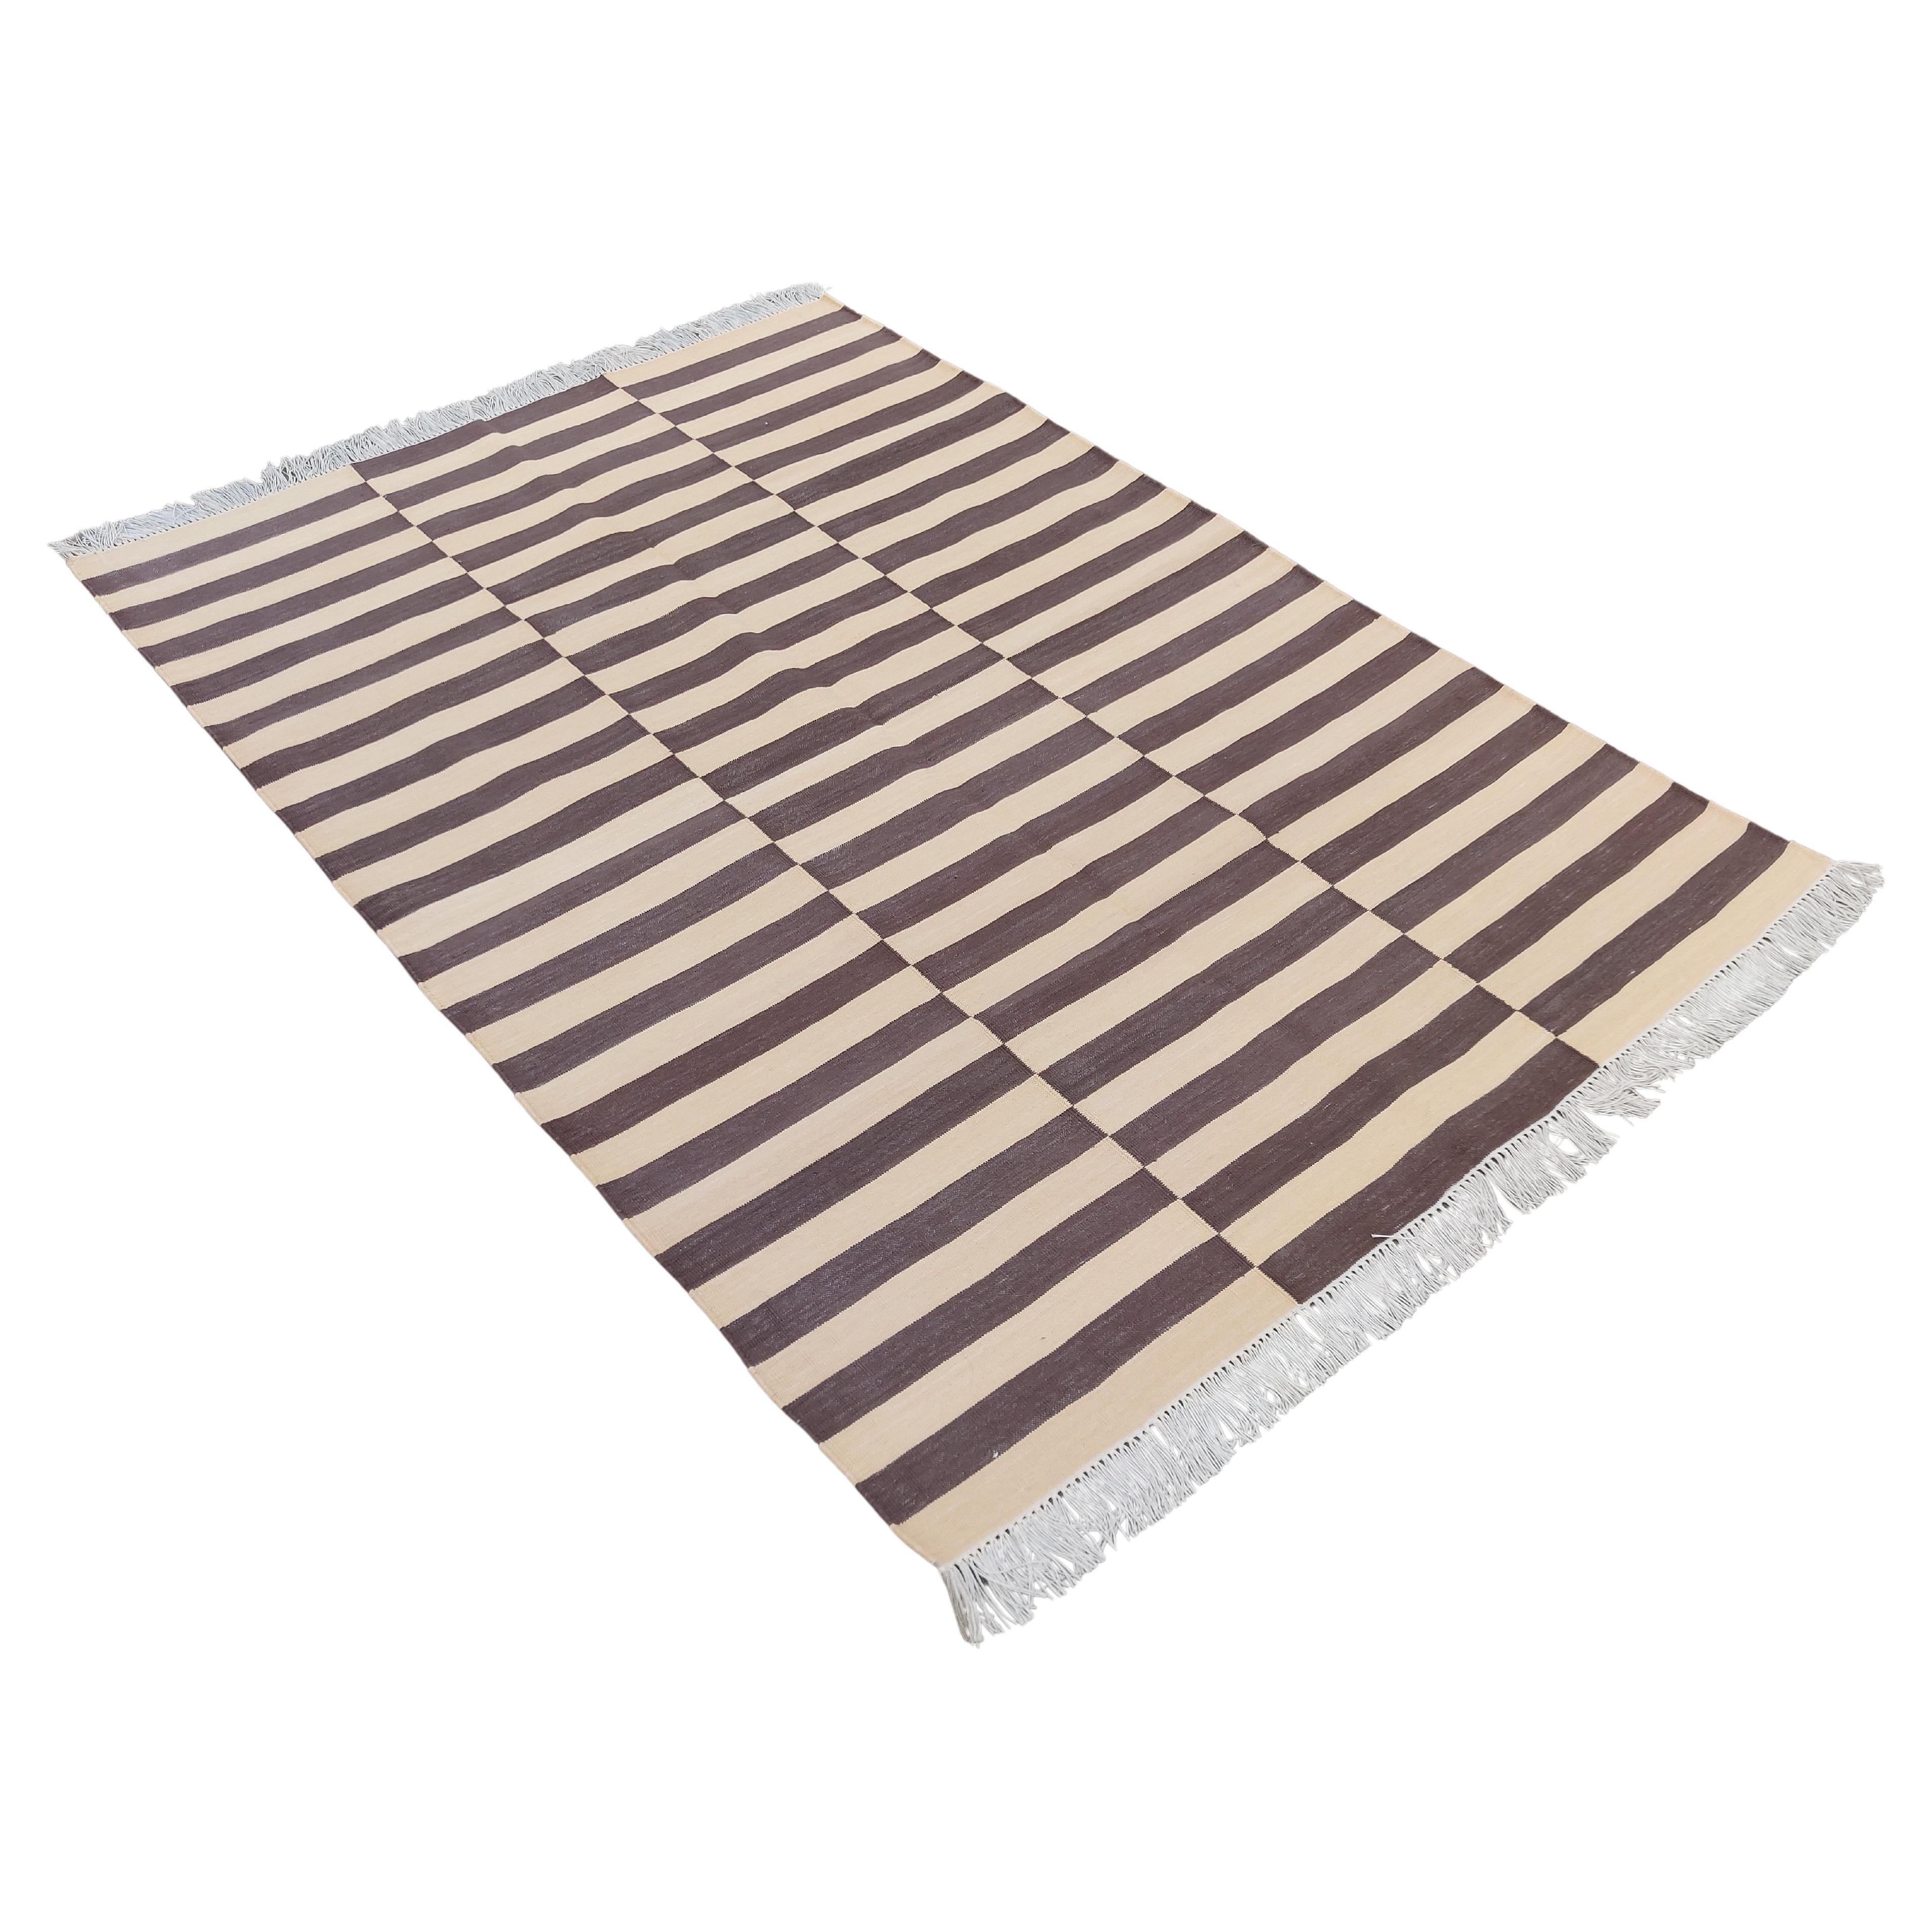 Tapis de sol en coton tissé à plat, 4x6 Brown and Cream Striped Indian Dhurrie